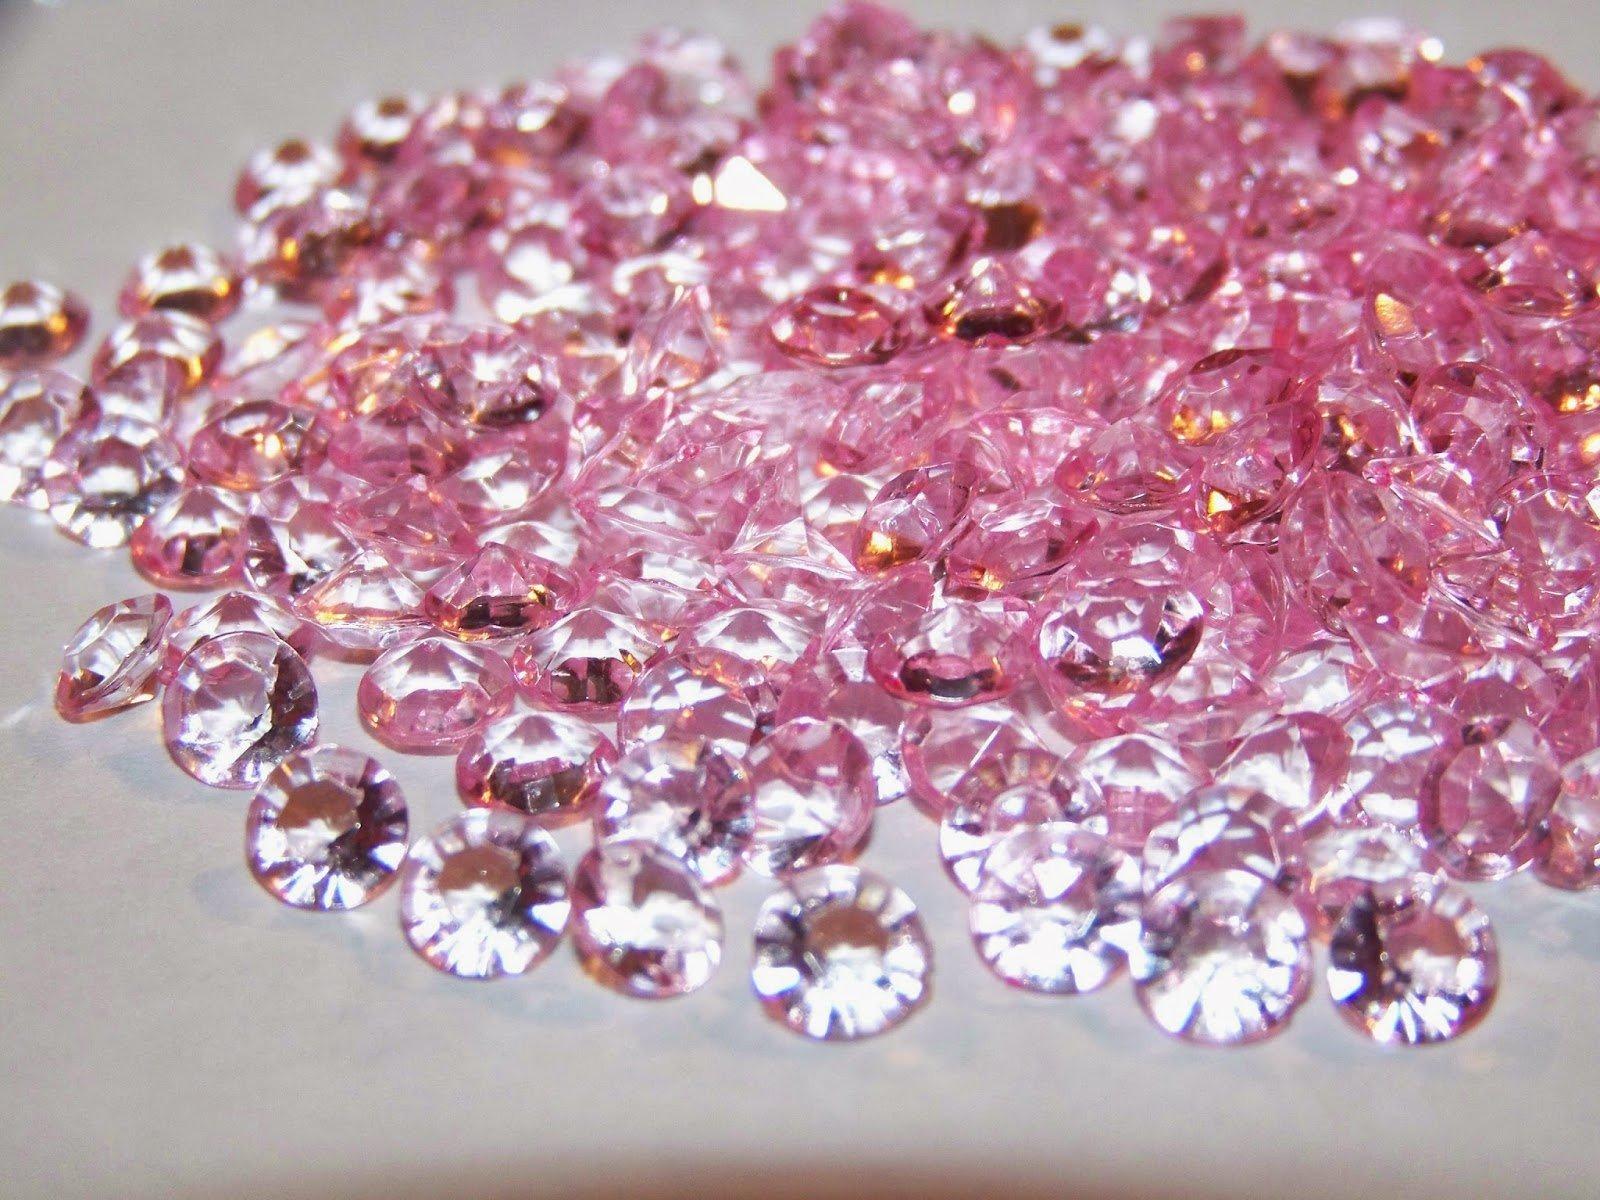 Pink Diamonds – Glitter Makes It